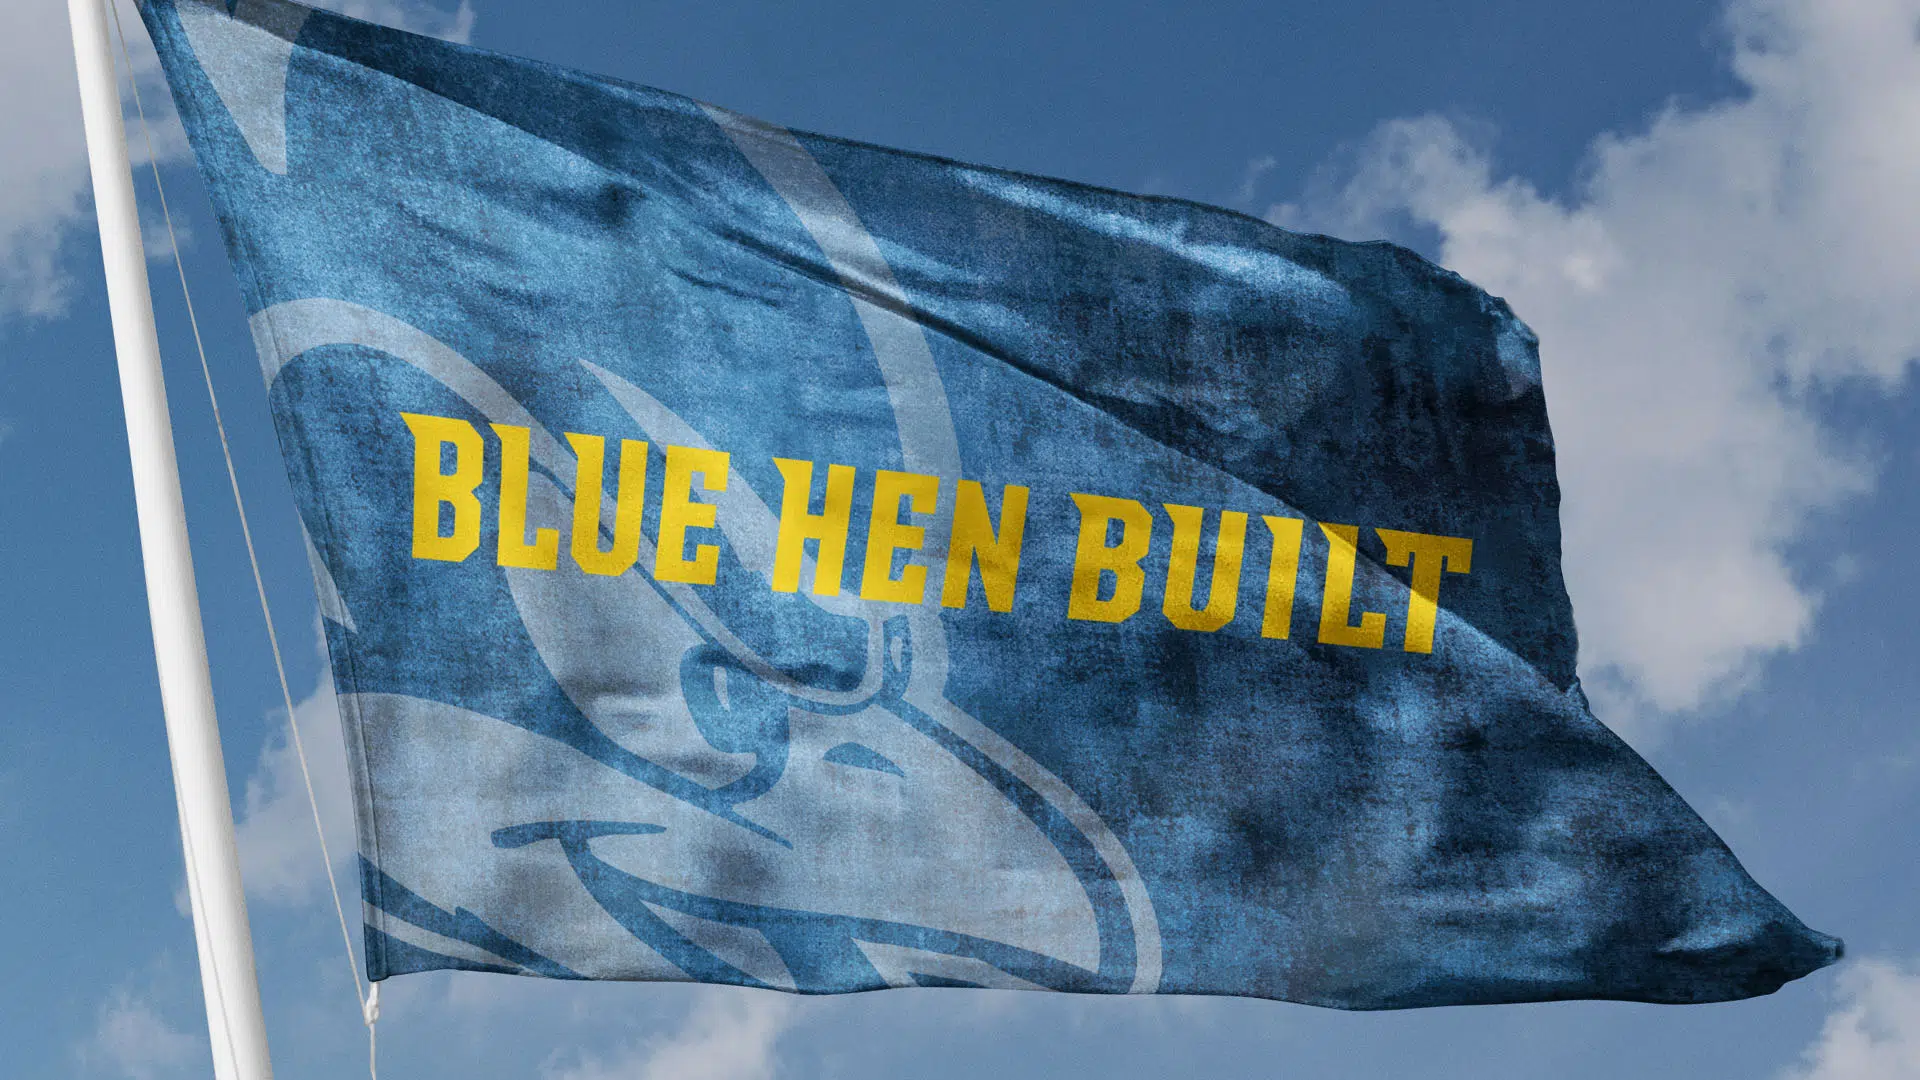 University of Delaware Branding Example: Blue Hen Built Flag Design